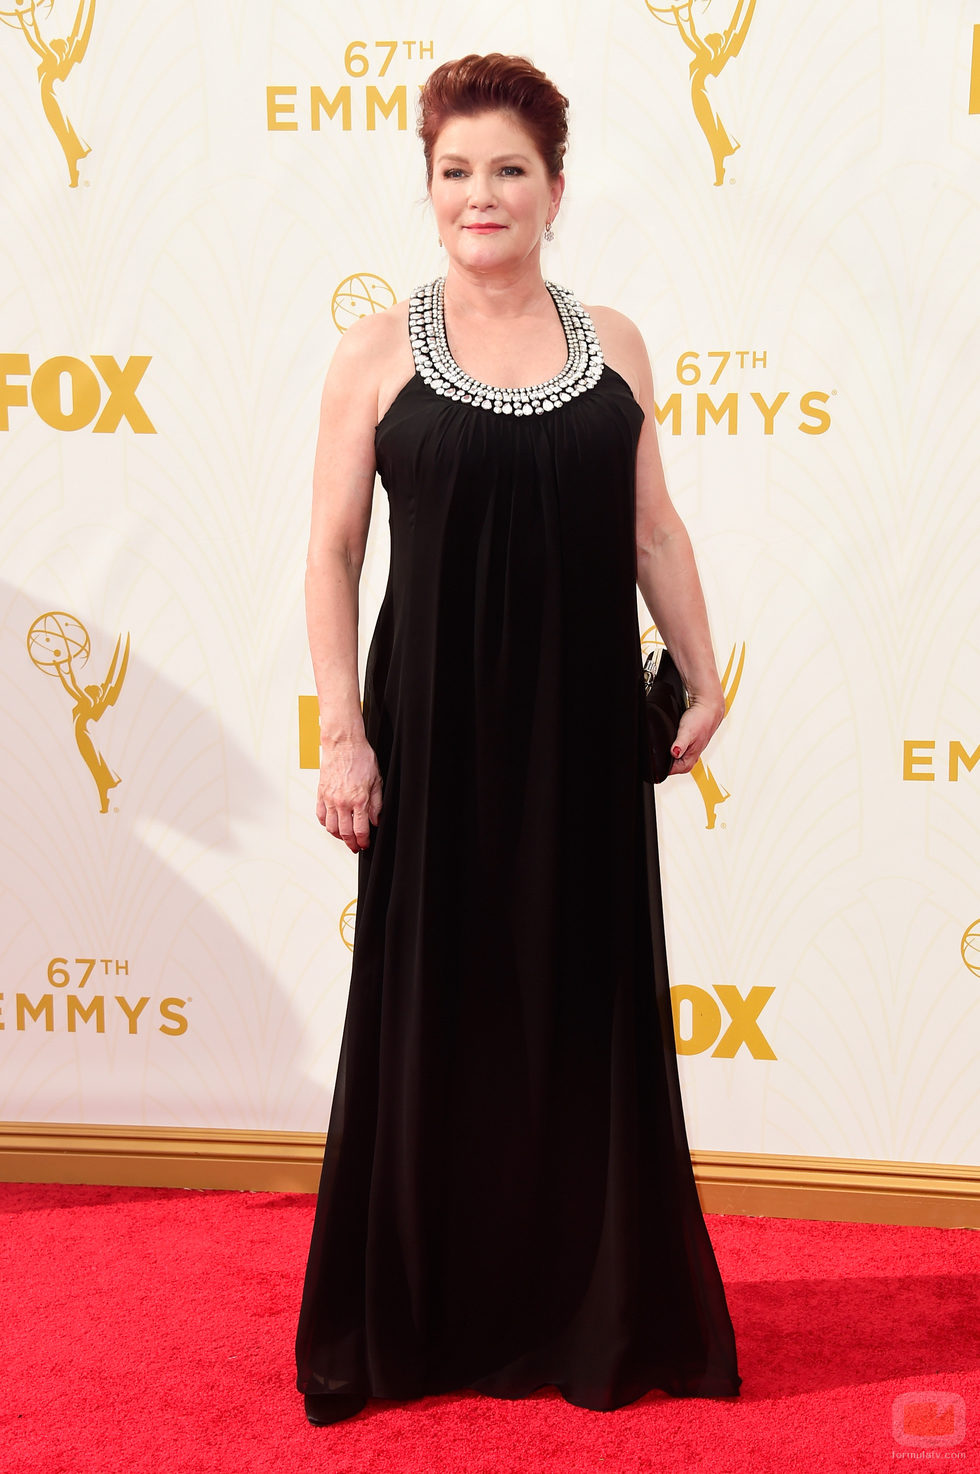 Kate Mulgrew en los Emmy 2015